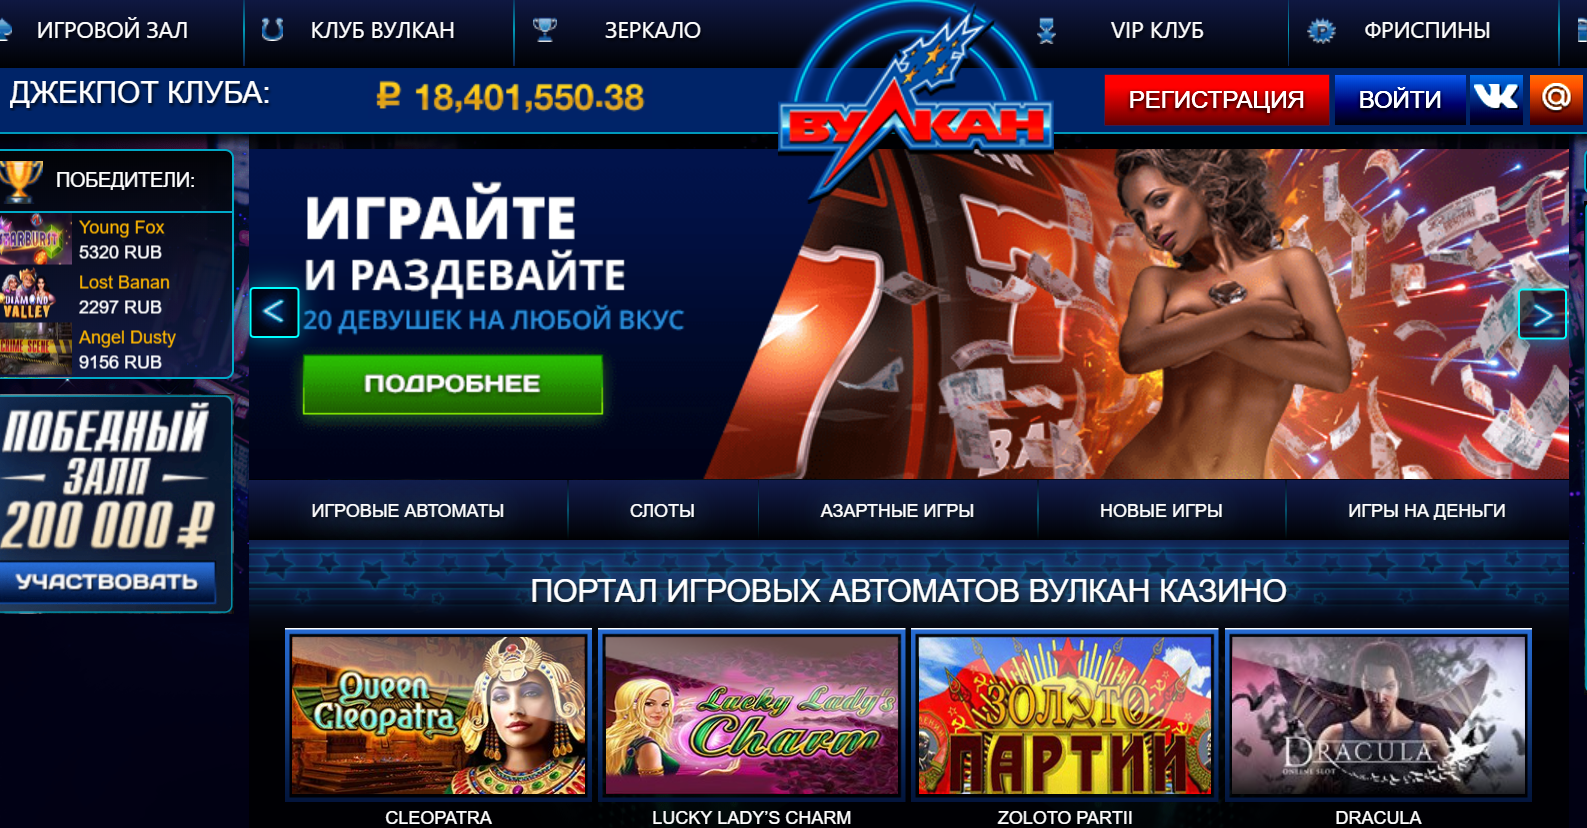 Официальный сайт Вулкан казино для безопасной игры